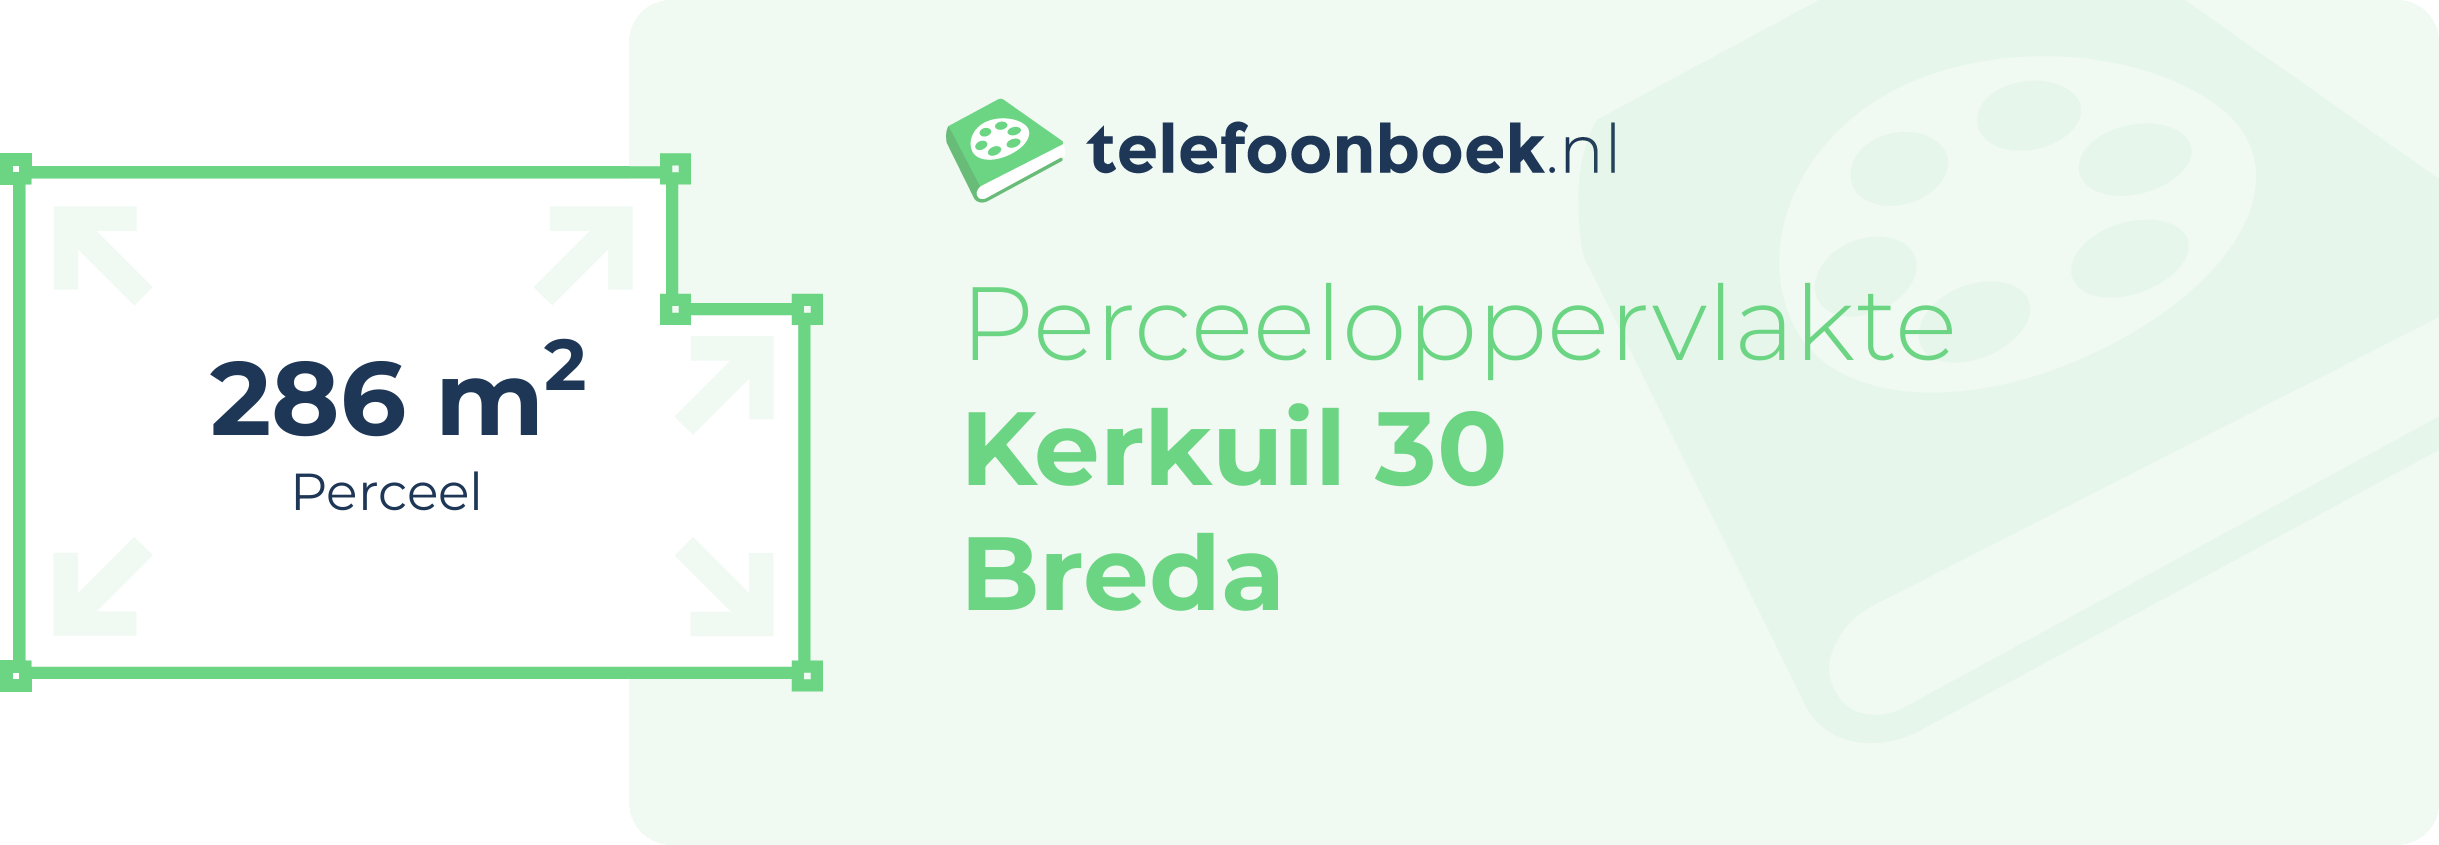 Perceeloppervlakte Kerkuil 30 Breda